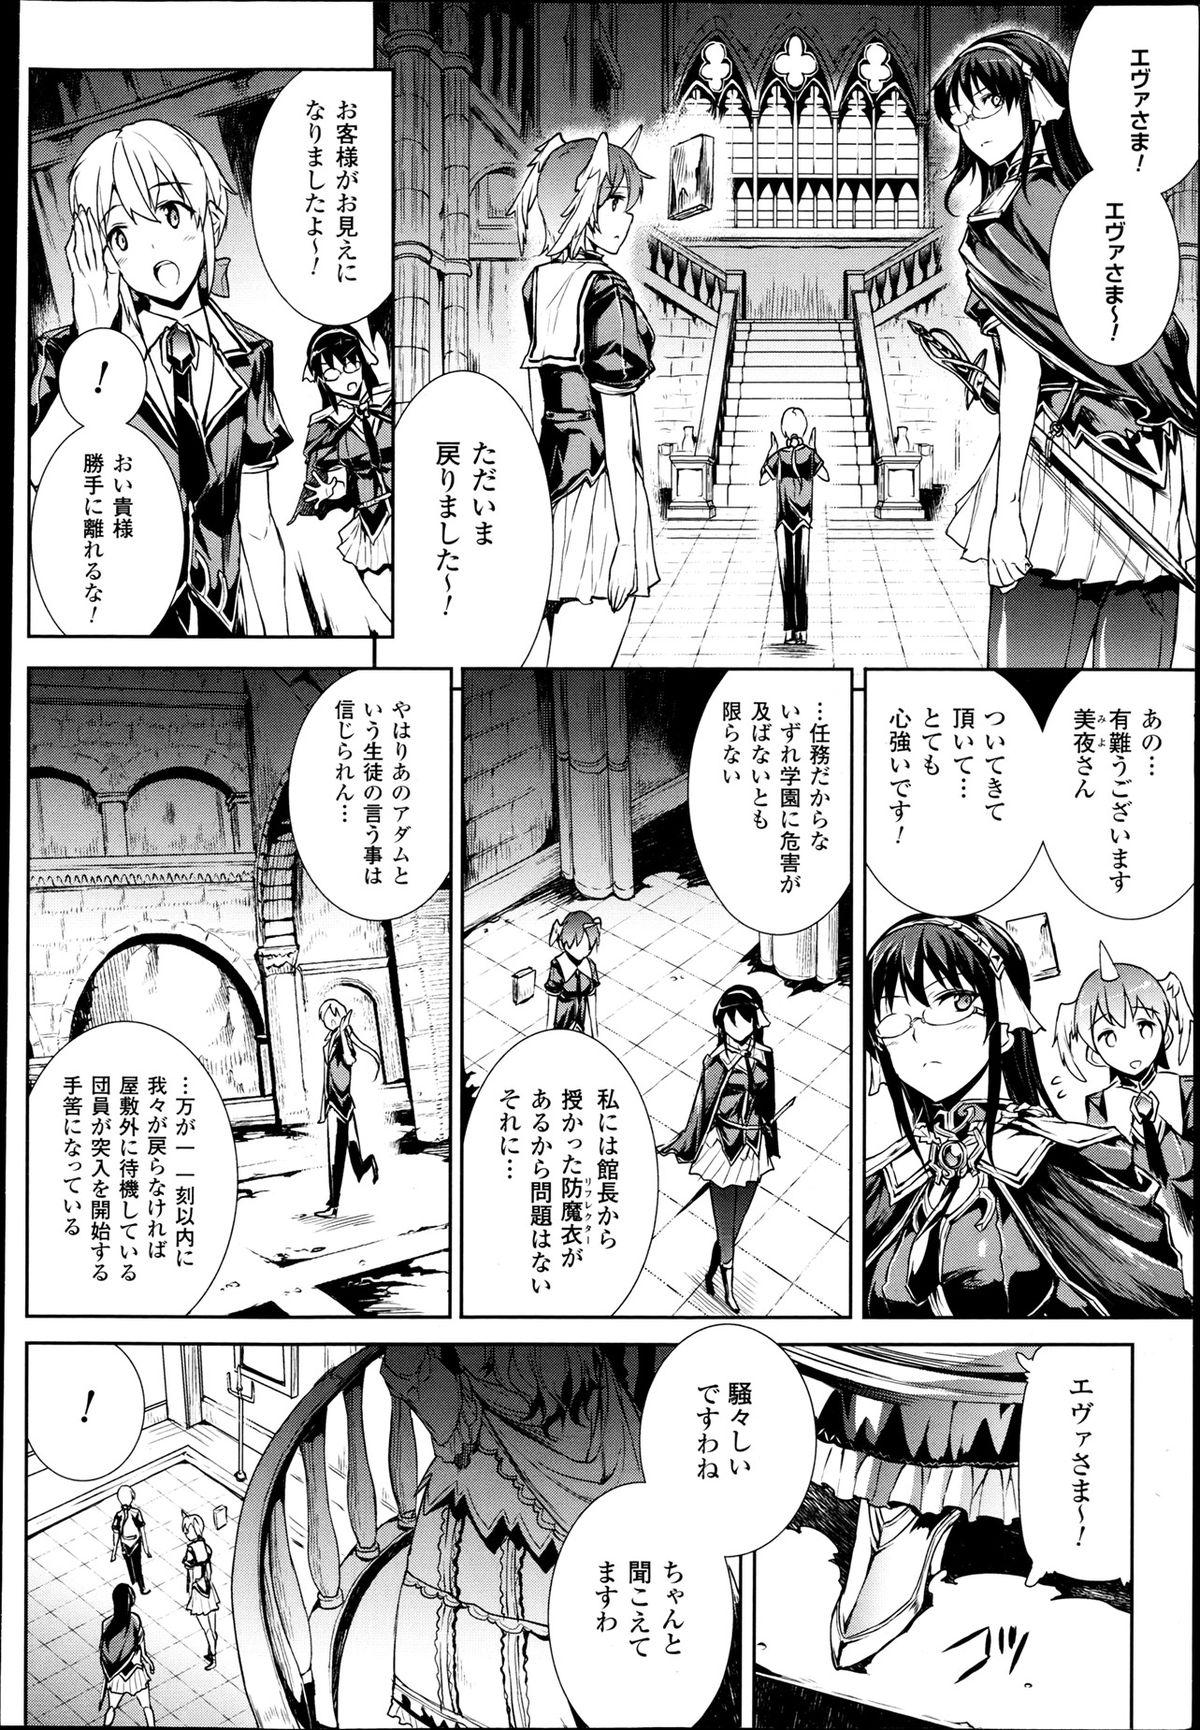 [Erect Sawaru] Shinkyoku no Grimoire -PANDRA saga 2nd story- Ch 07-9.5 2